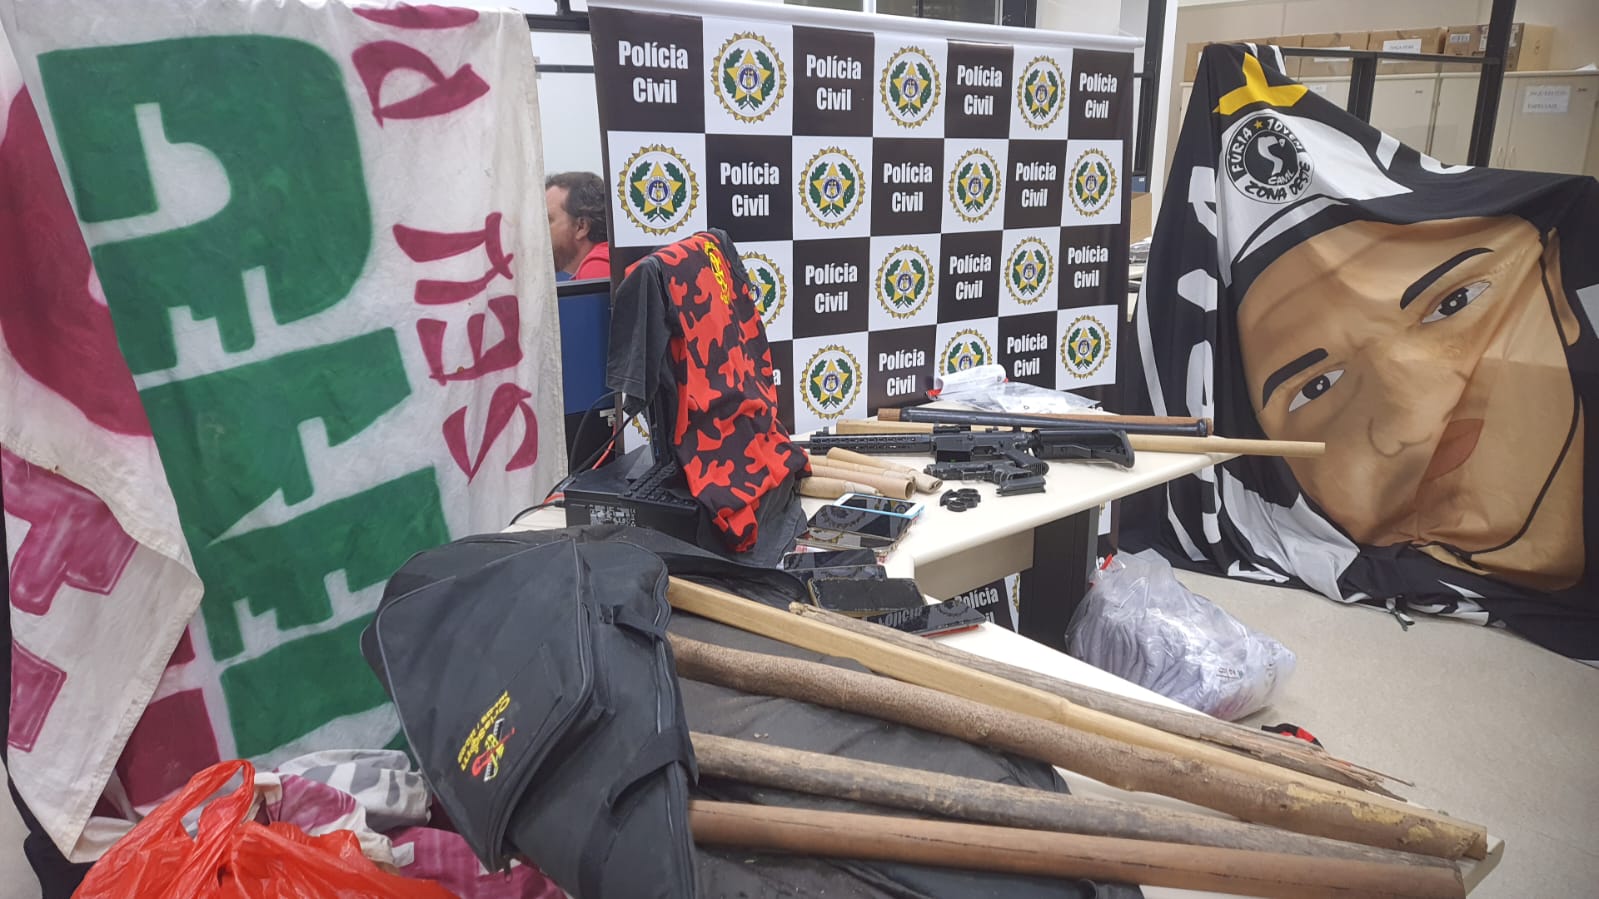 Integrantes de torcidas organizadas do Rio são alvos de operação da Polícia Civil